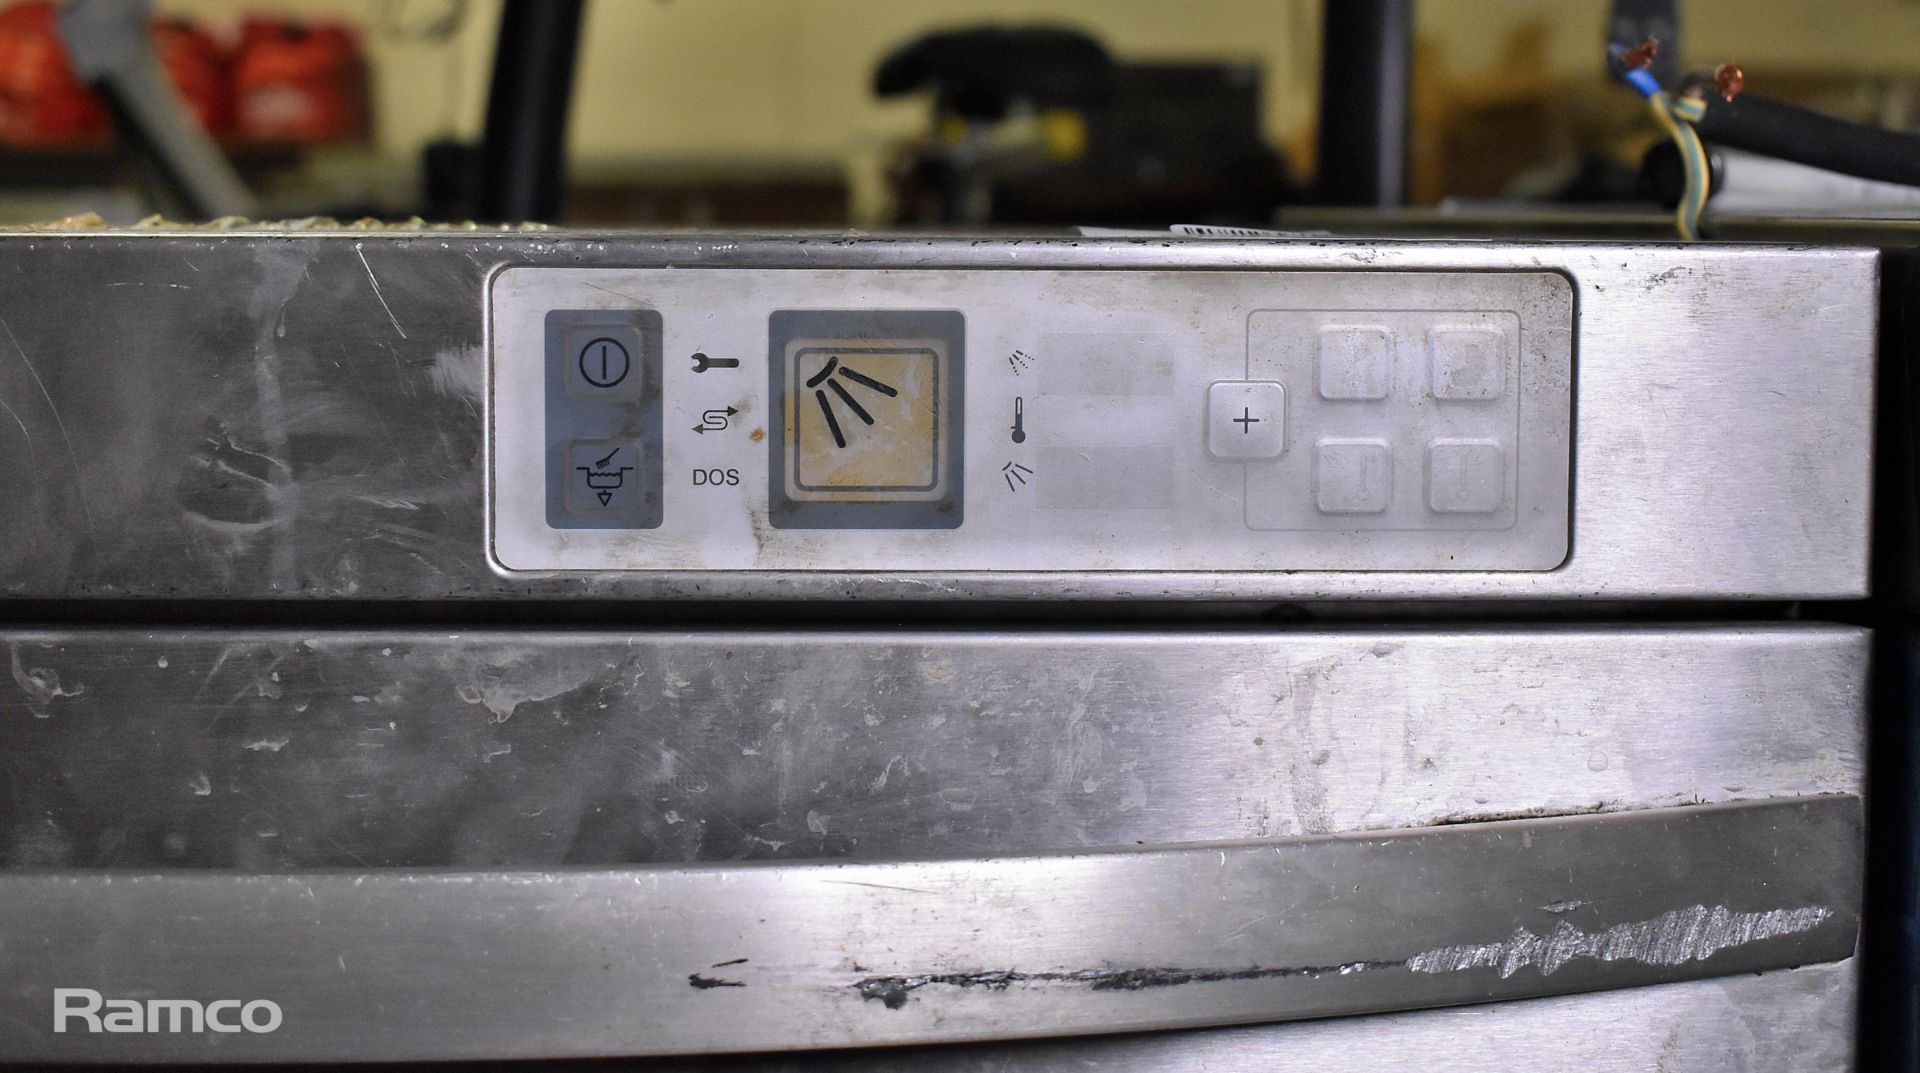 Winterhalter GS302 undercounter dishwasher - Image 4 of 5